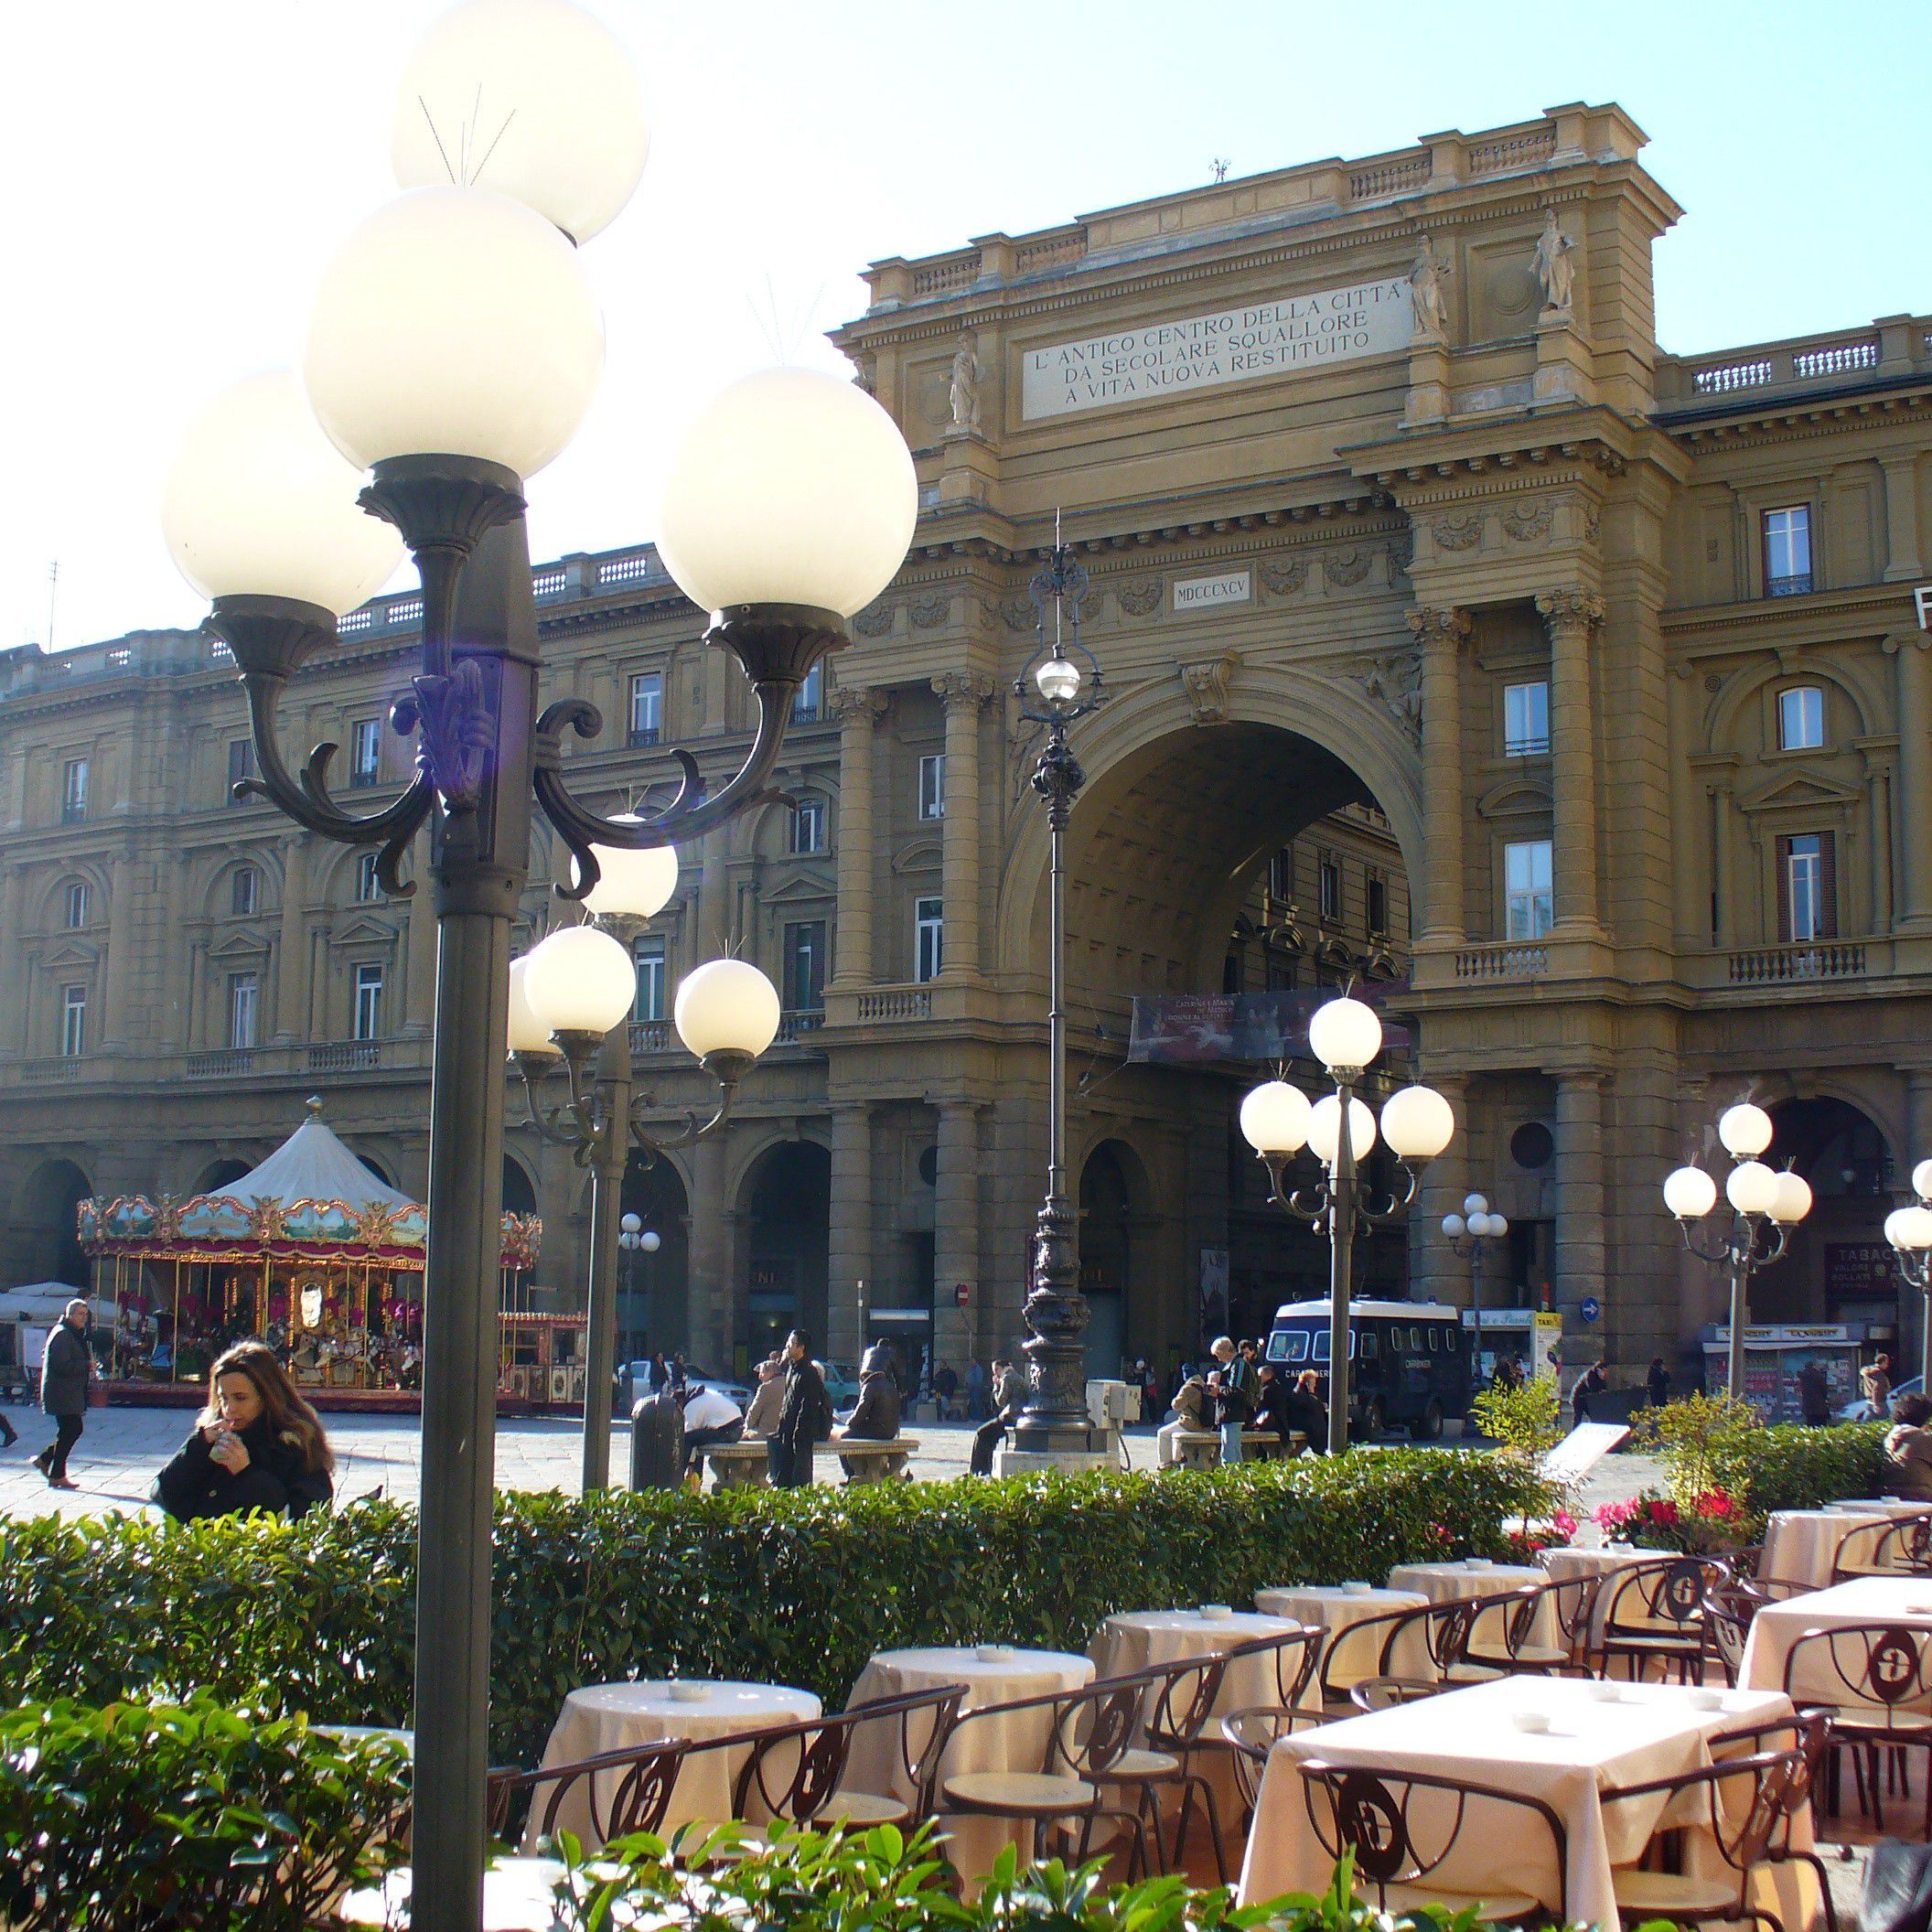 Piazza della Repubblica and its cafes